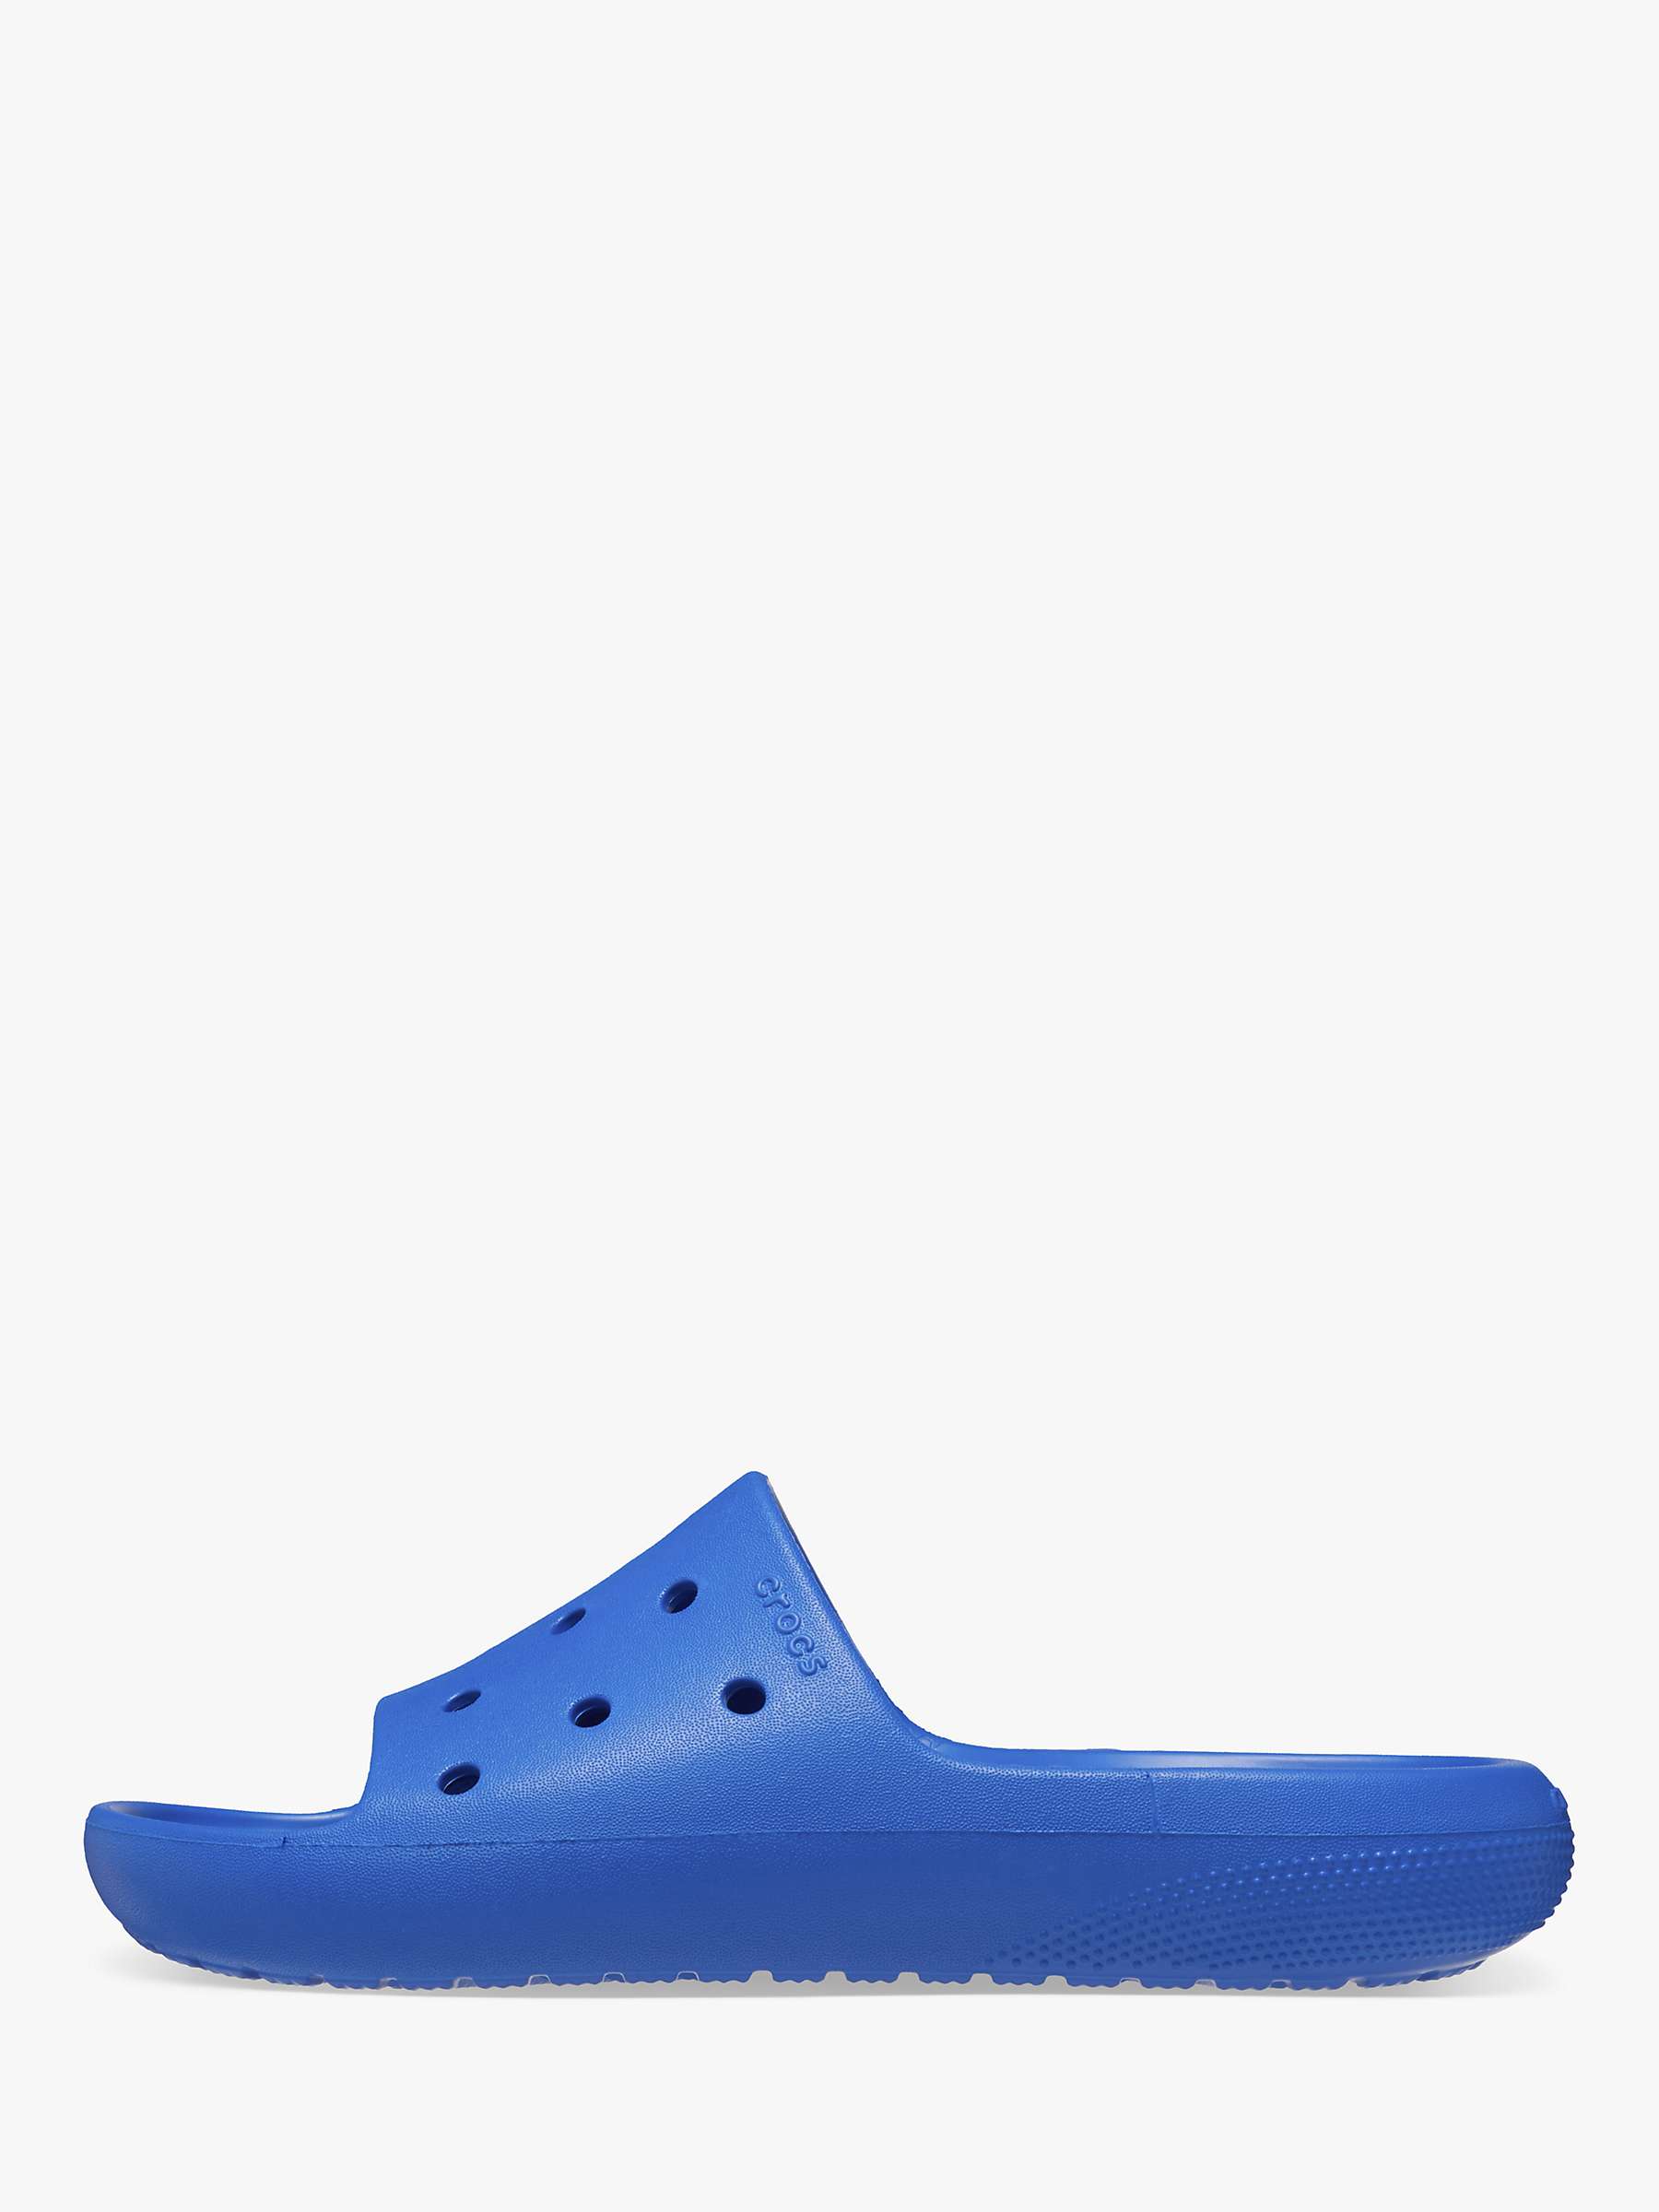 Buy Crocs Classic Slider Sandals, Blue Bolt Online at johnlewis.com